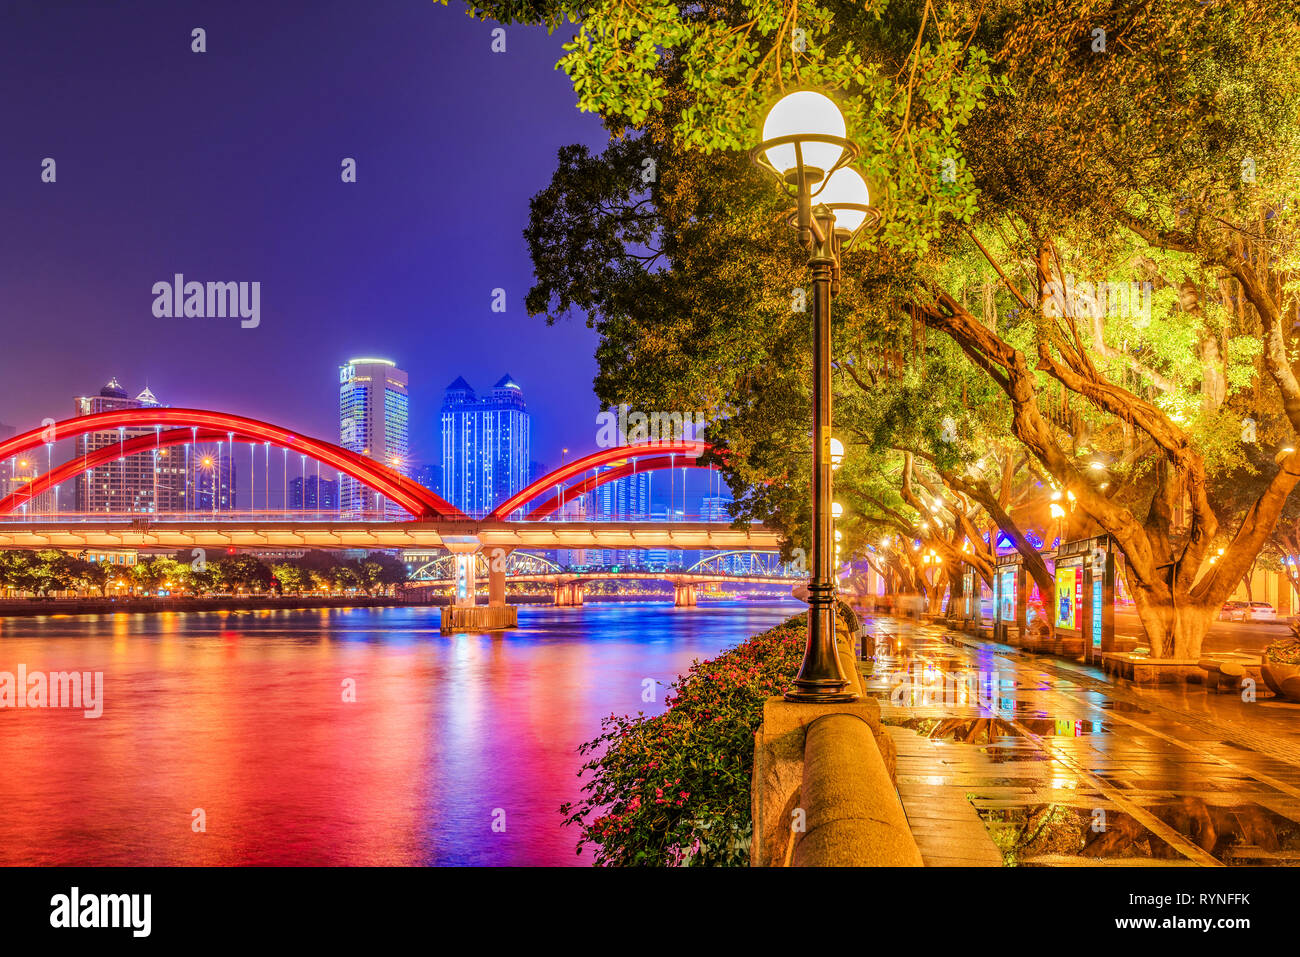 GUANGZHOU, Cina - 24 ottobre: vista notturna di Riverside park e il fanous Jiefang ponte lungo il Fiume Pearl il 24 ottobre 2018 in Guangzhou Foto Stock